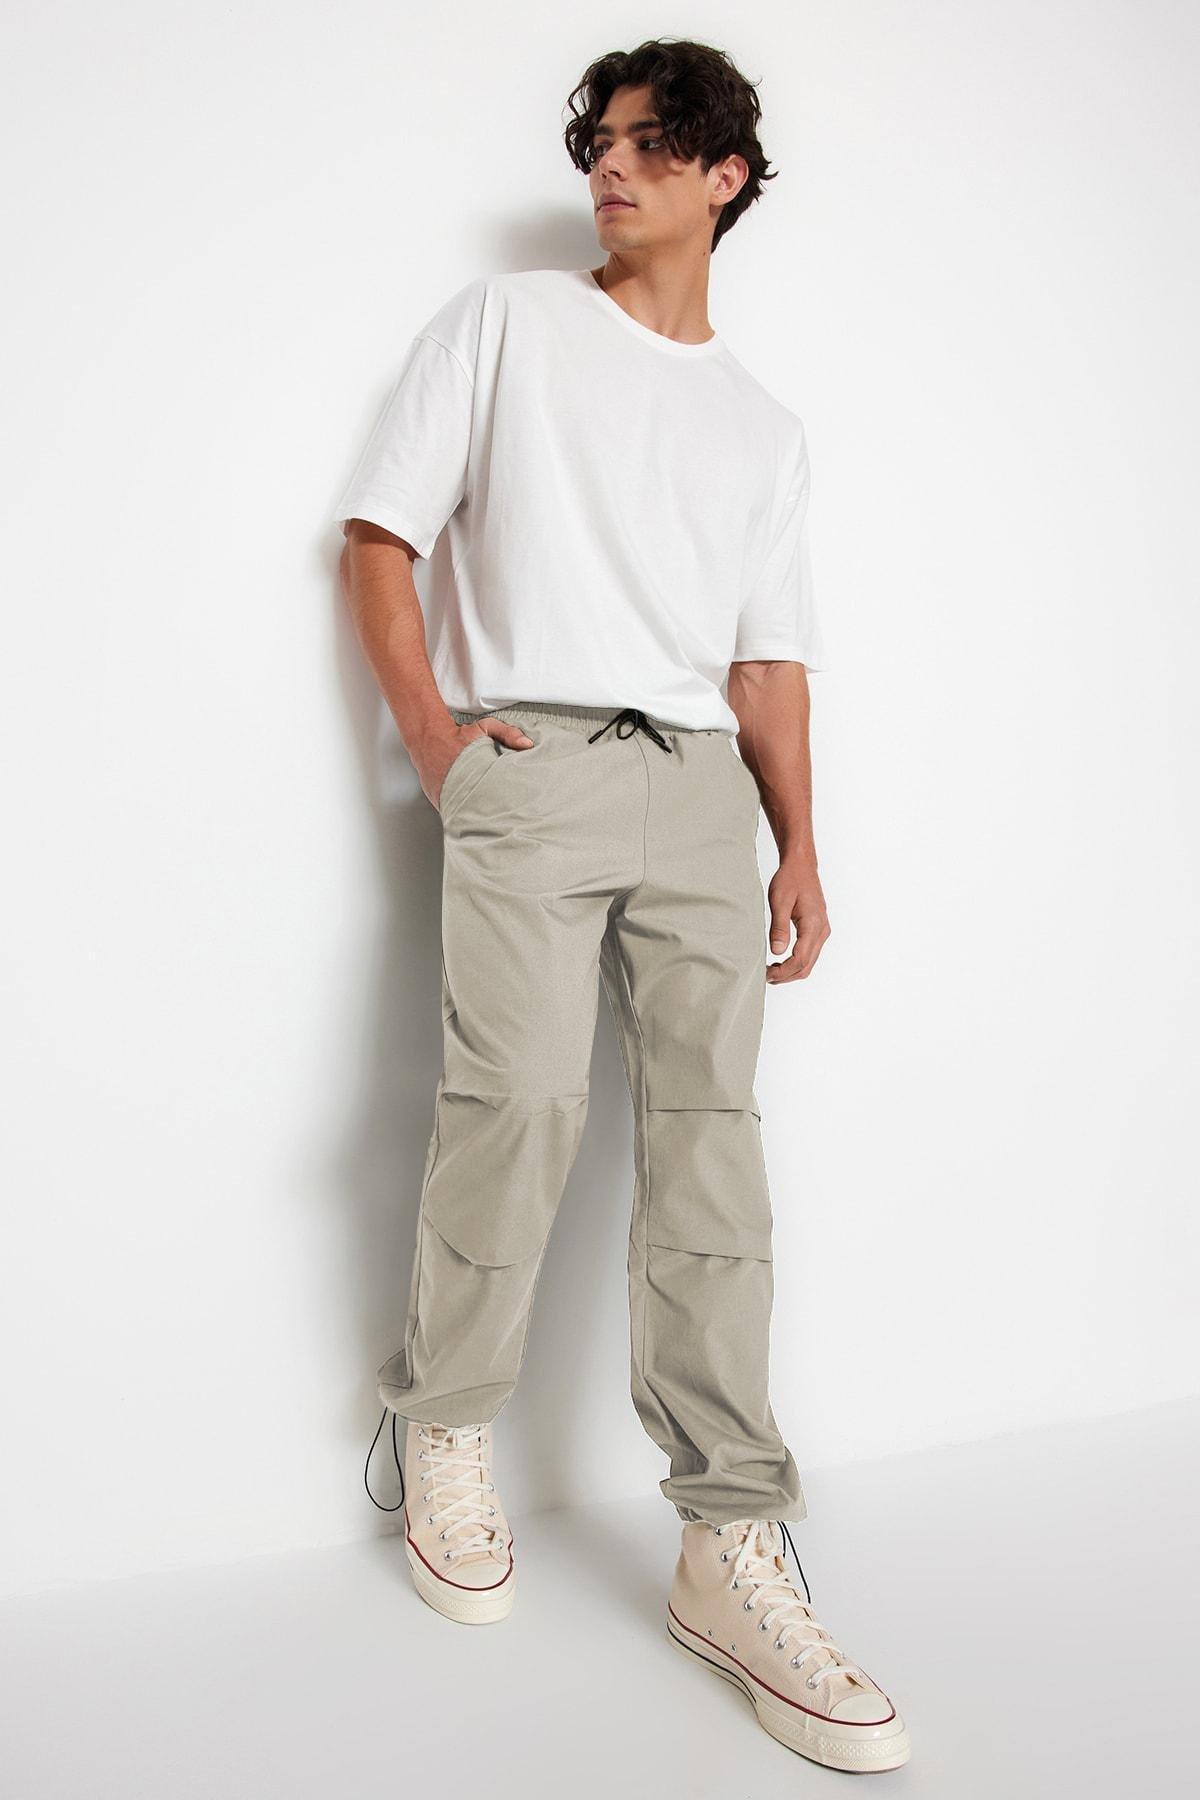 Trendyol - Khaki Joggers Pants